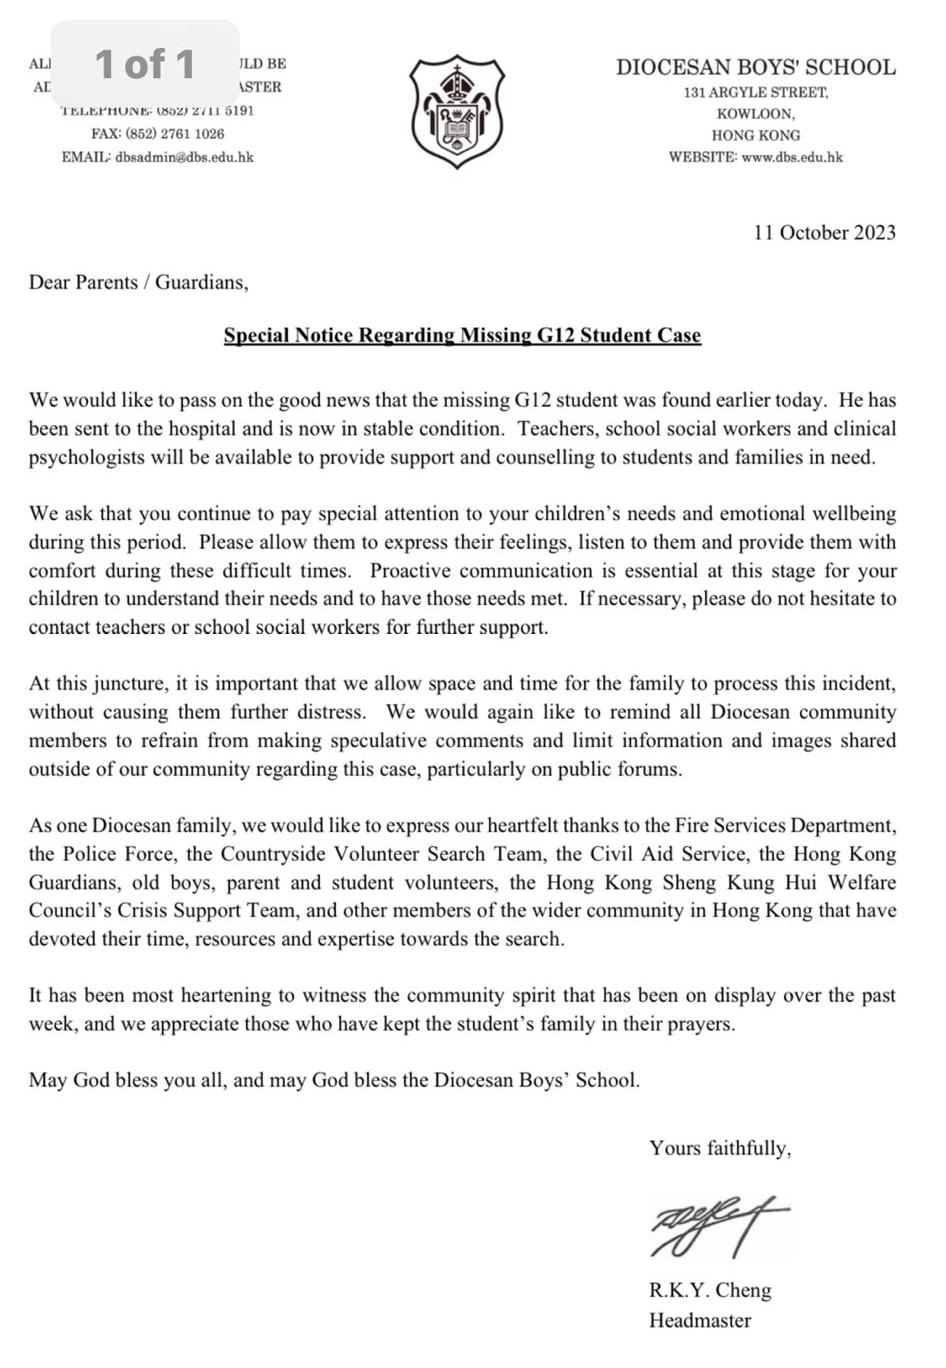 拔萃男书院校长郑基恩向家长发通告，公布曾宪哲安全获救消息。